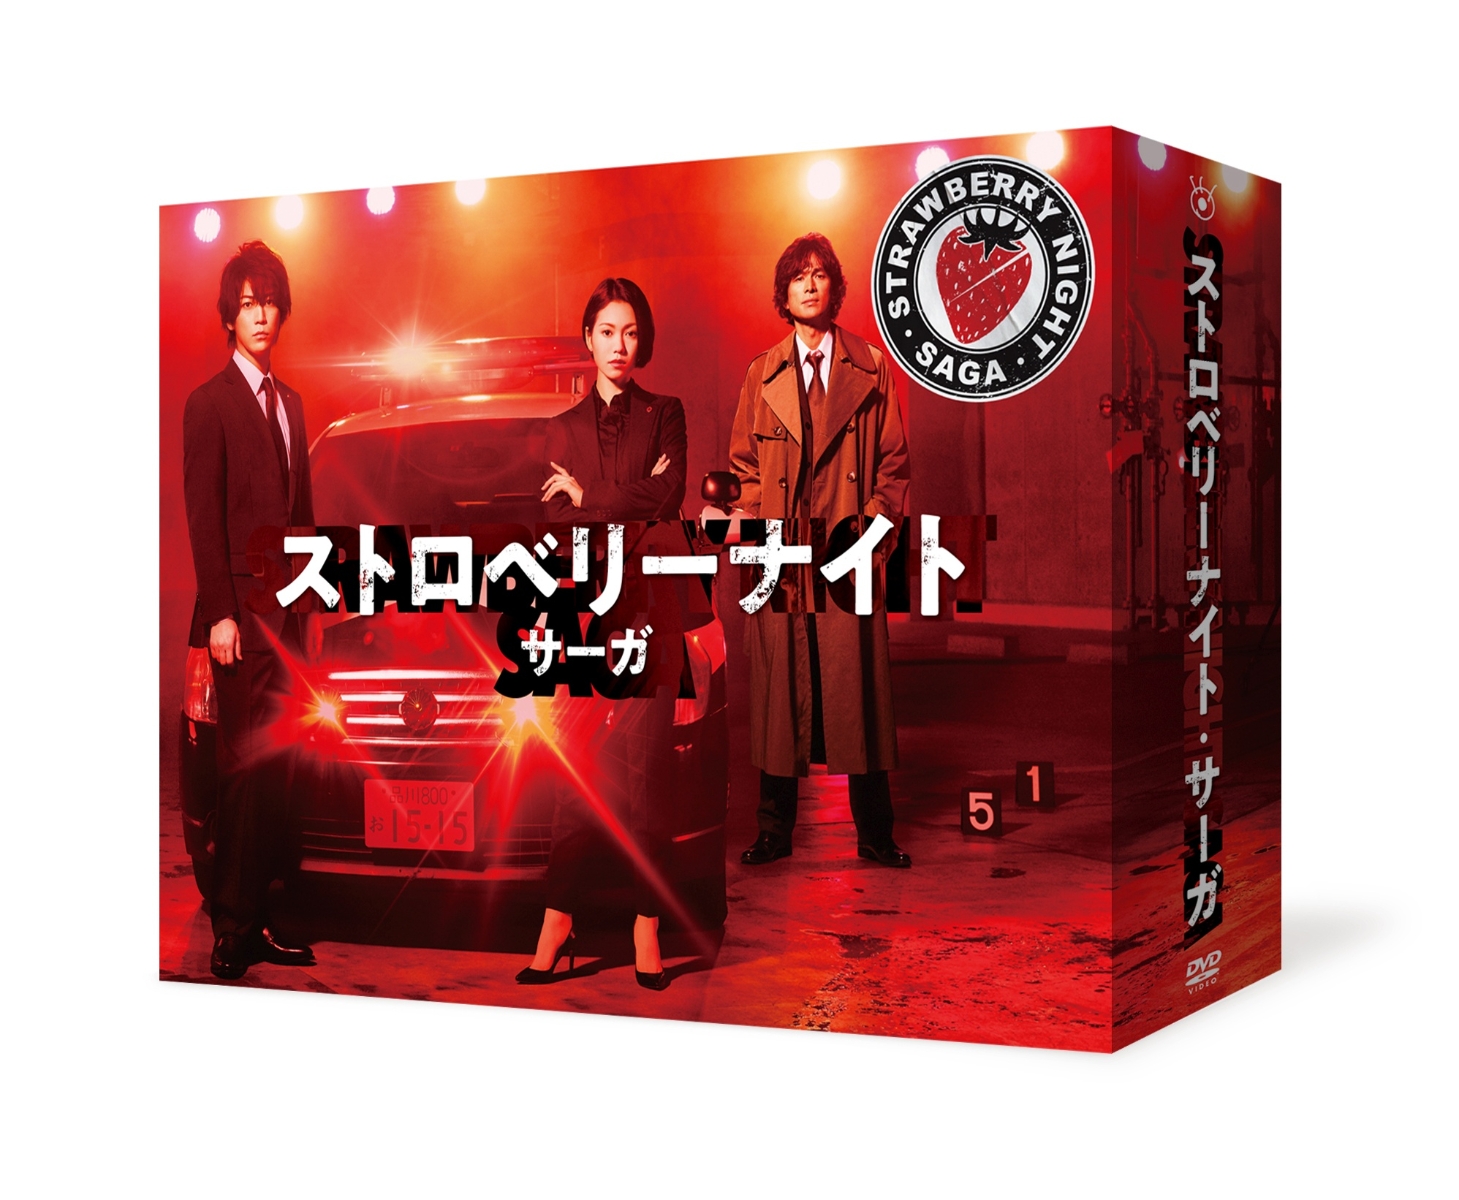 楽天ブックス: ストロベリーナイト・サーガ DVD-BOX - 二階堂ふみ